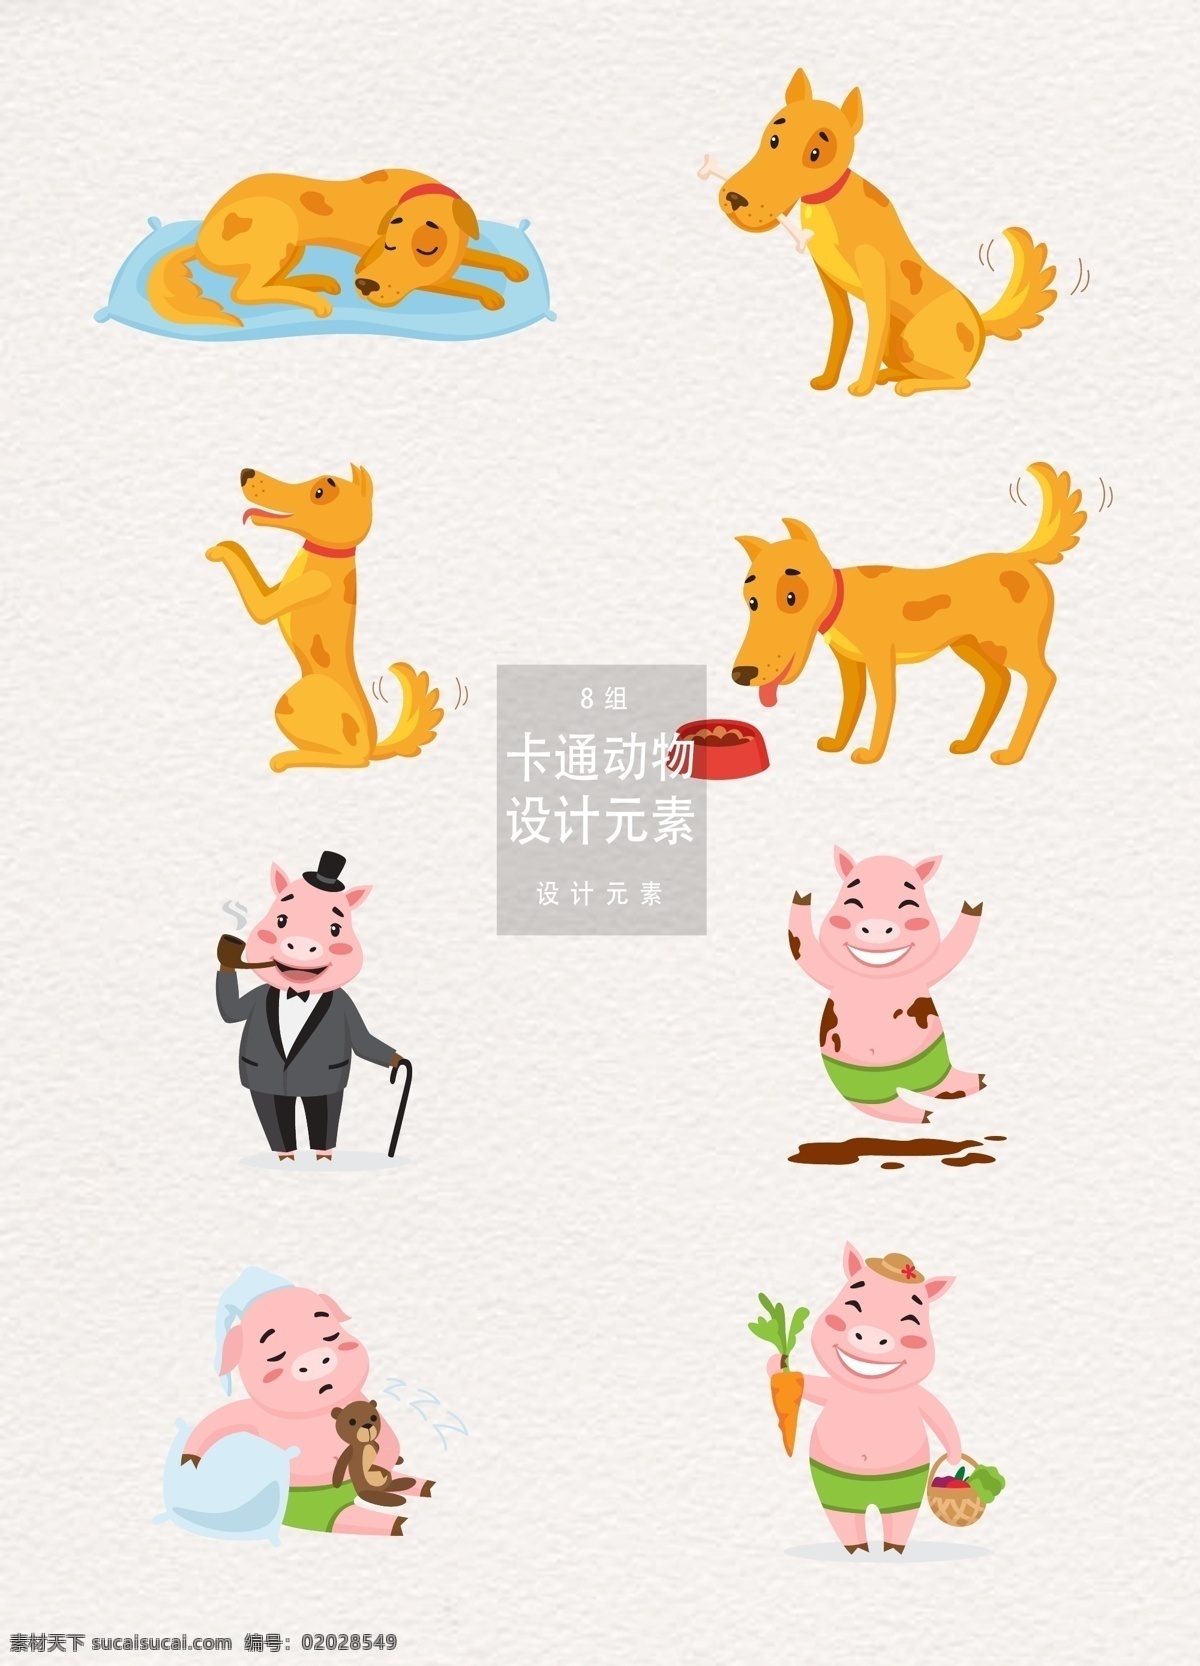 卡通 可爱 动物 元素 卡通动物 设计元素 小狗 可爱动物 狗 小猪 猪